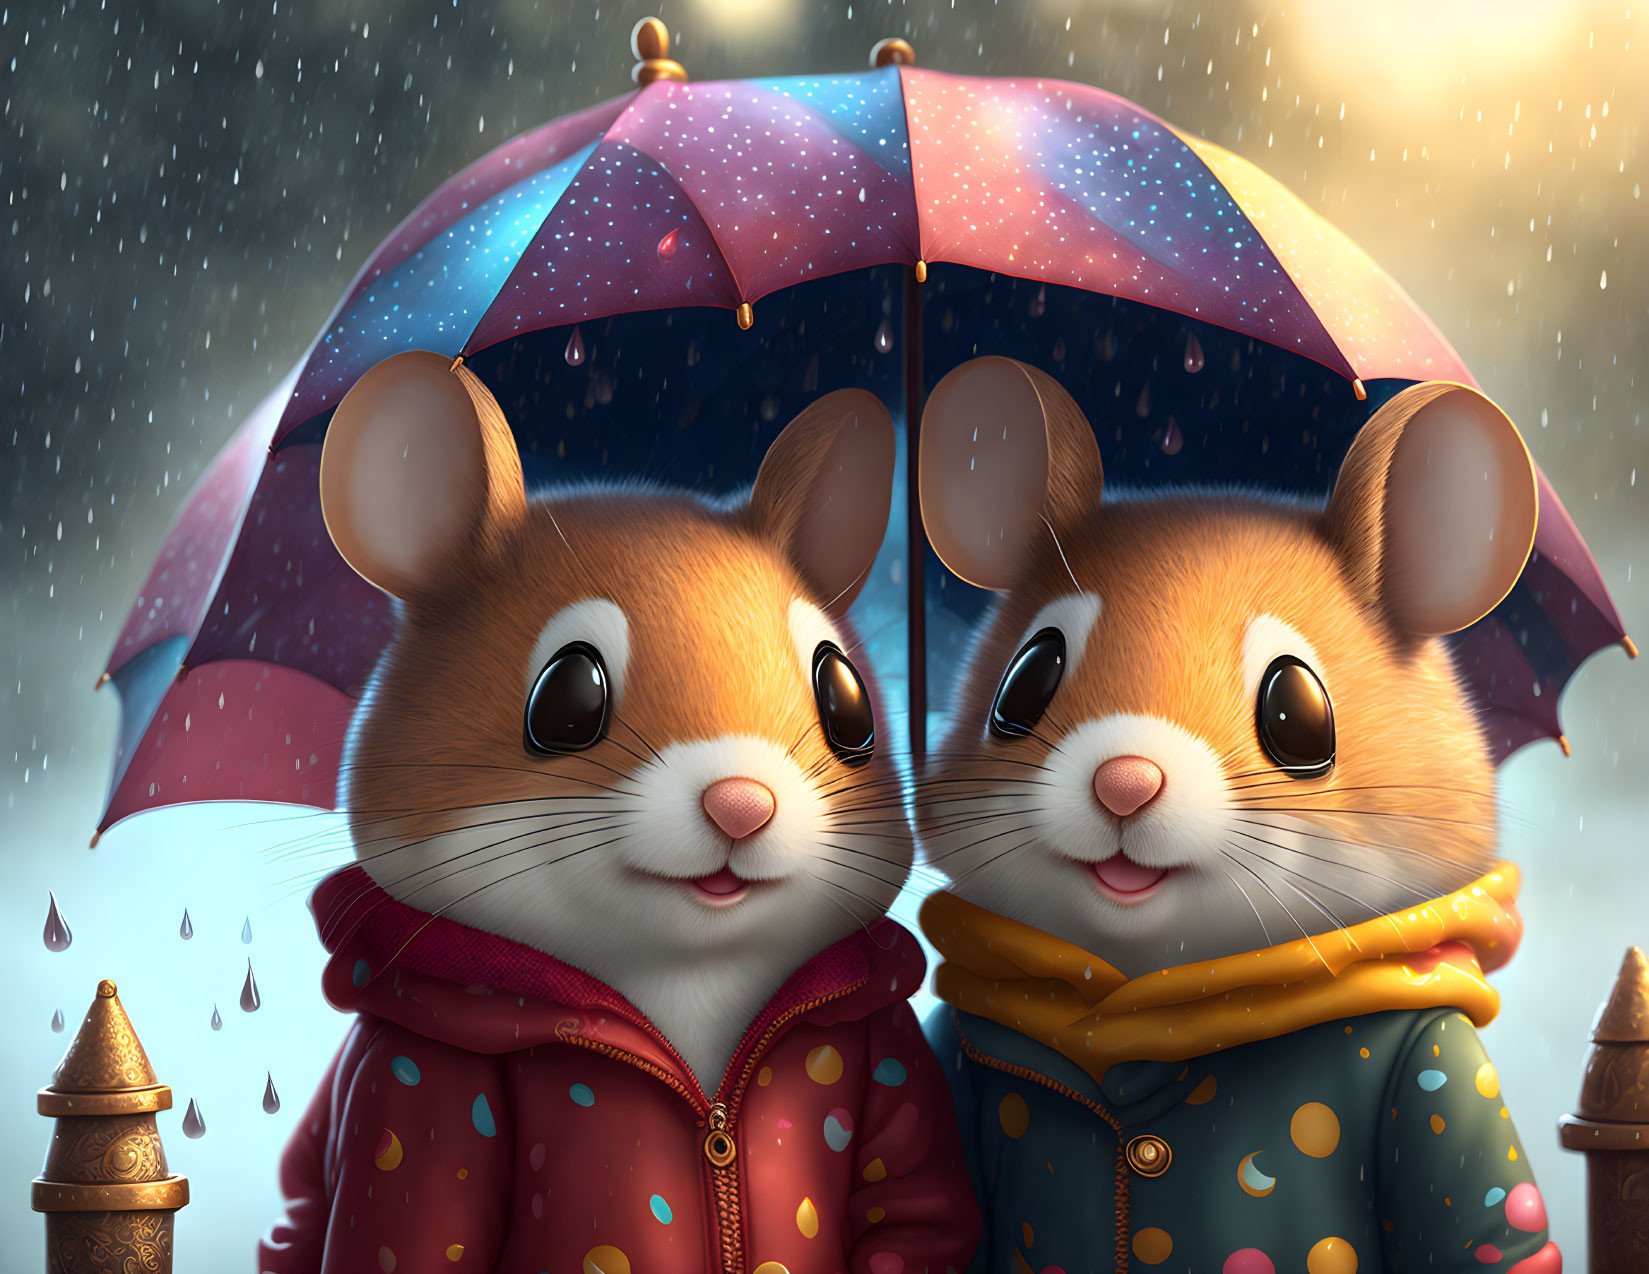 Adorable animated mice under colorful umbrella in rain.